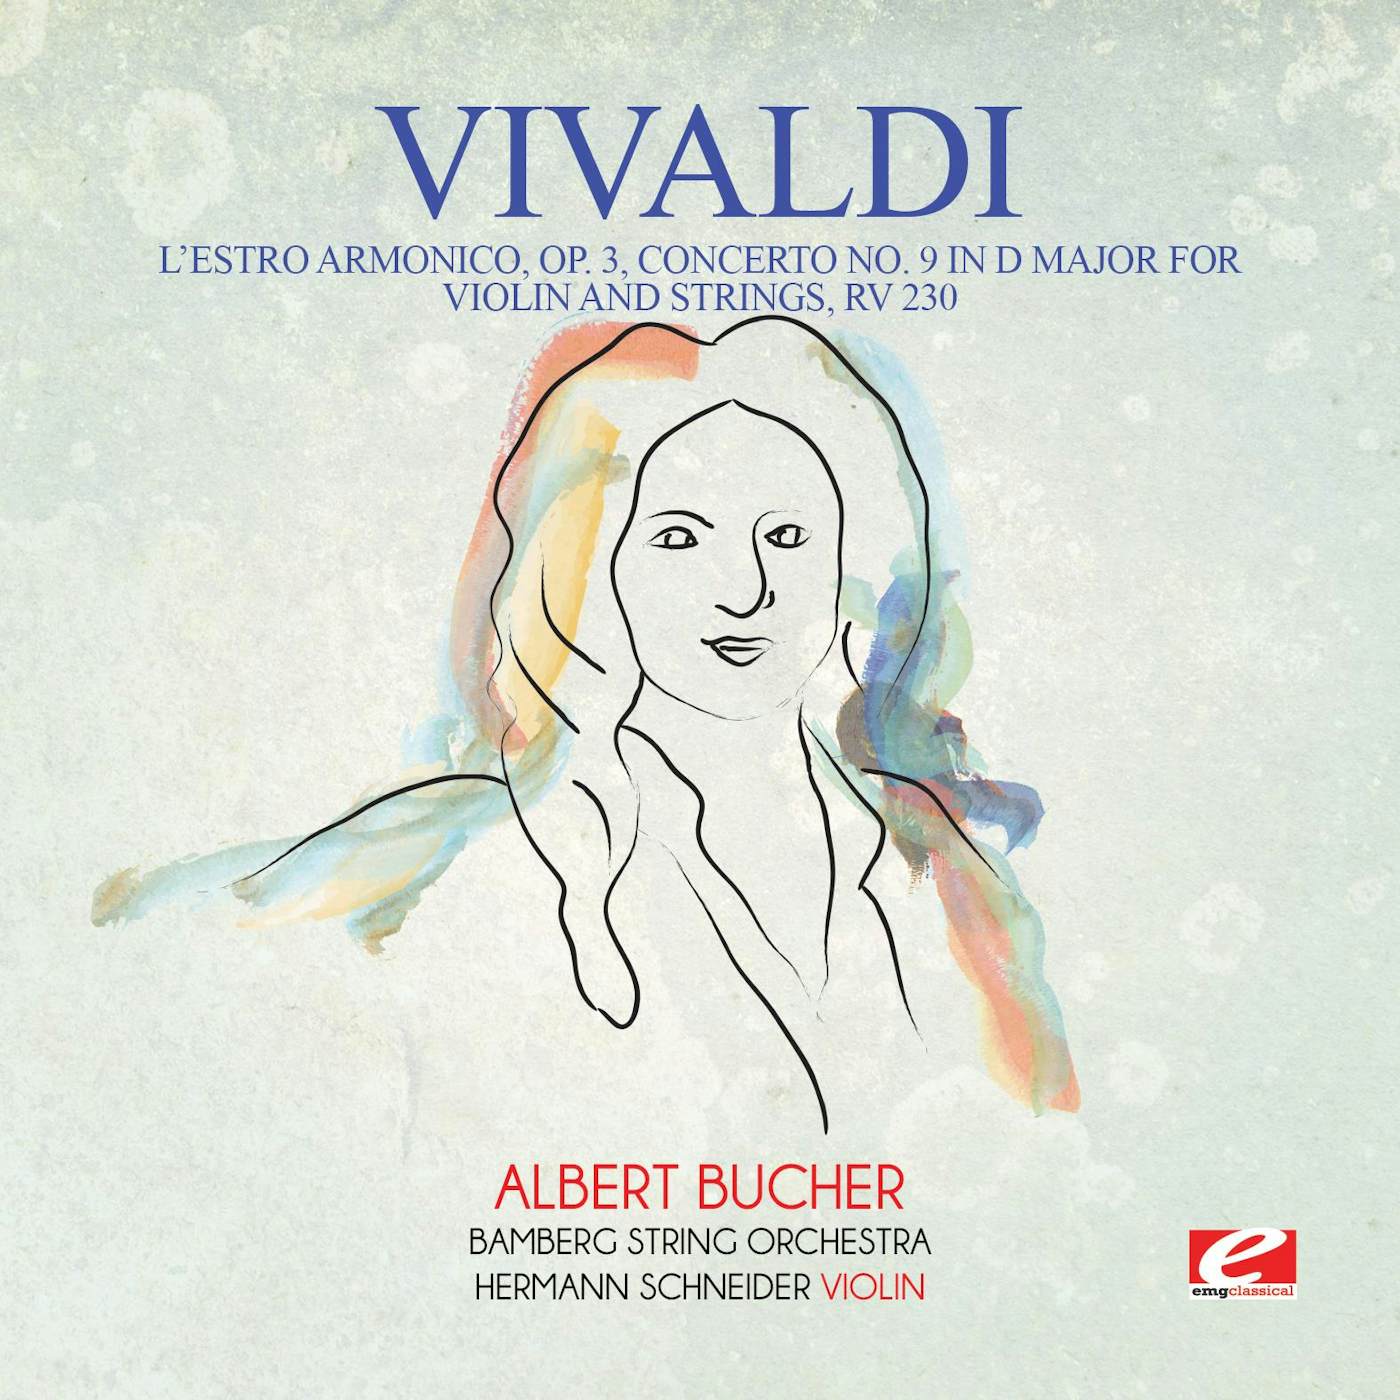 Antonio Vivaldi L'ESTRO ARMONICO OP. 3 CONCERTO NO. 9 IN D MAJOR CD